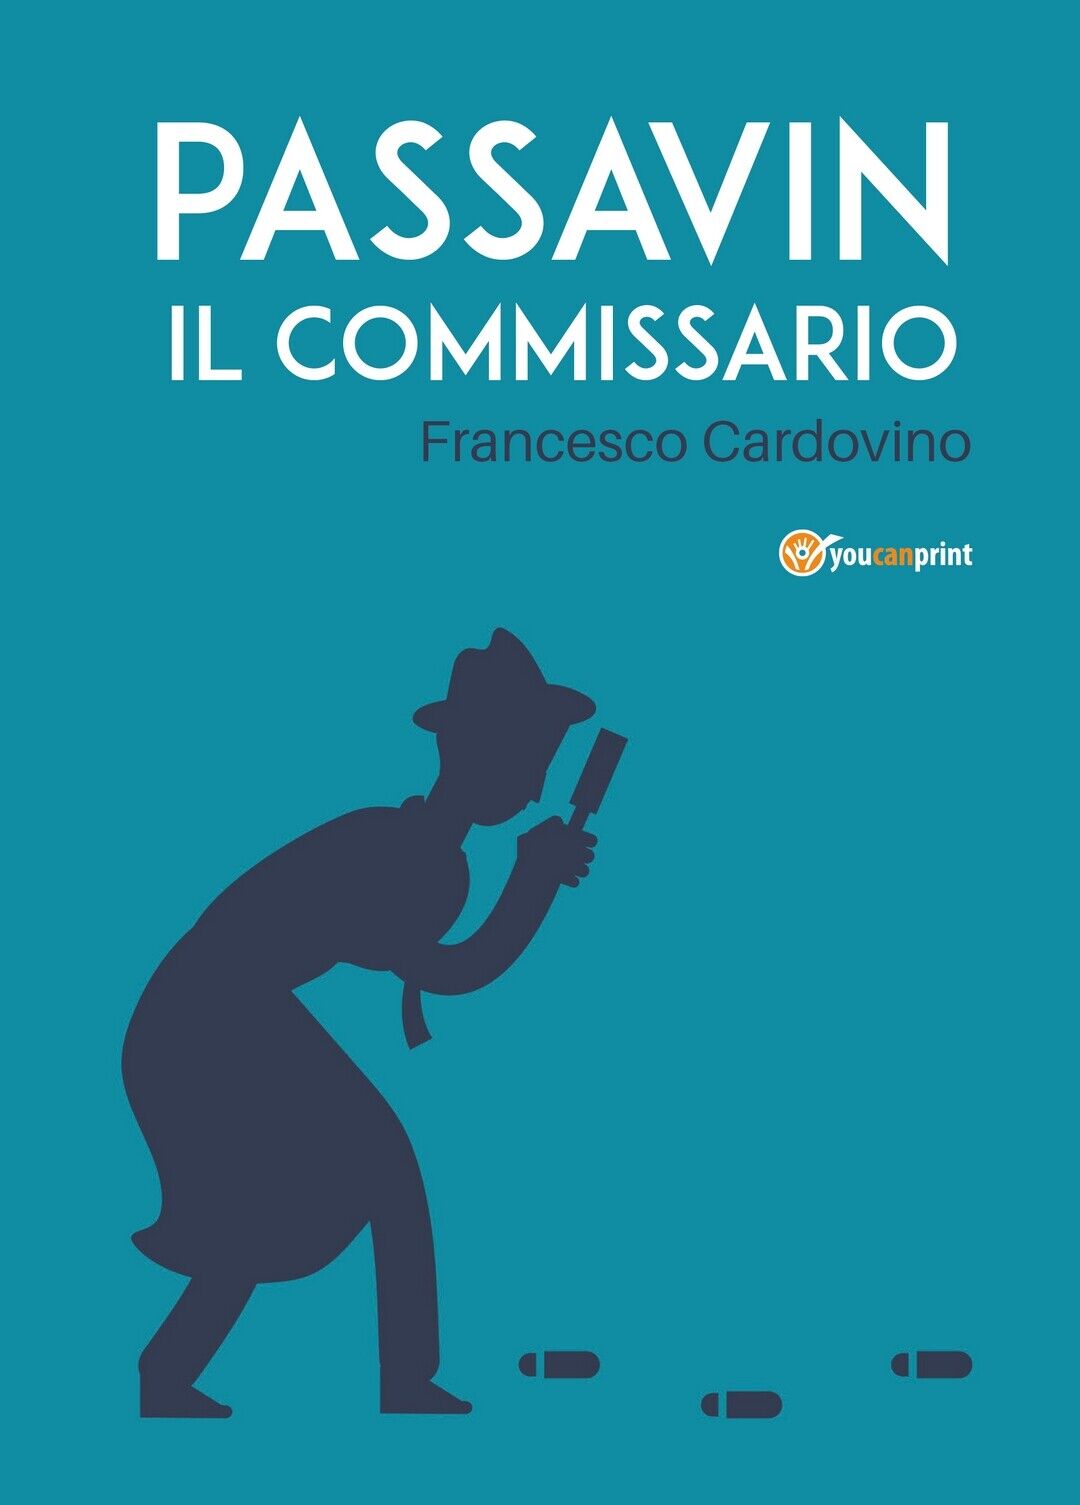 Passavin Il commissario  di Francesco Cardovino,  2019,  Youcanprint